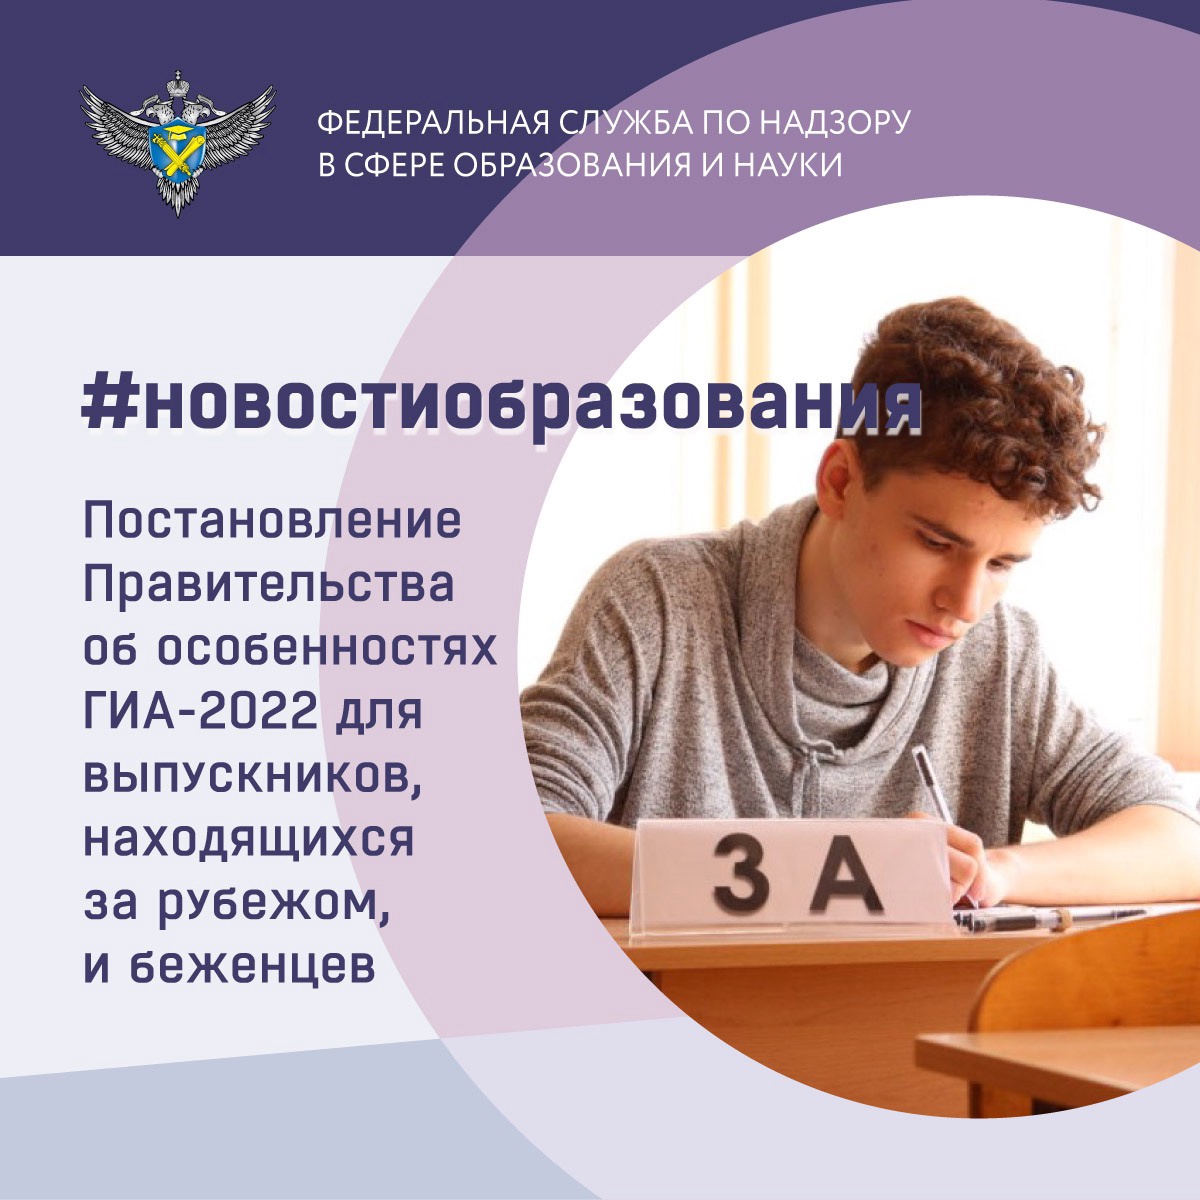 Правительство РФ облегчило прохождение ГИА для выпускников, находящихся за рубежом, и беженцев